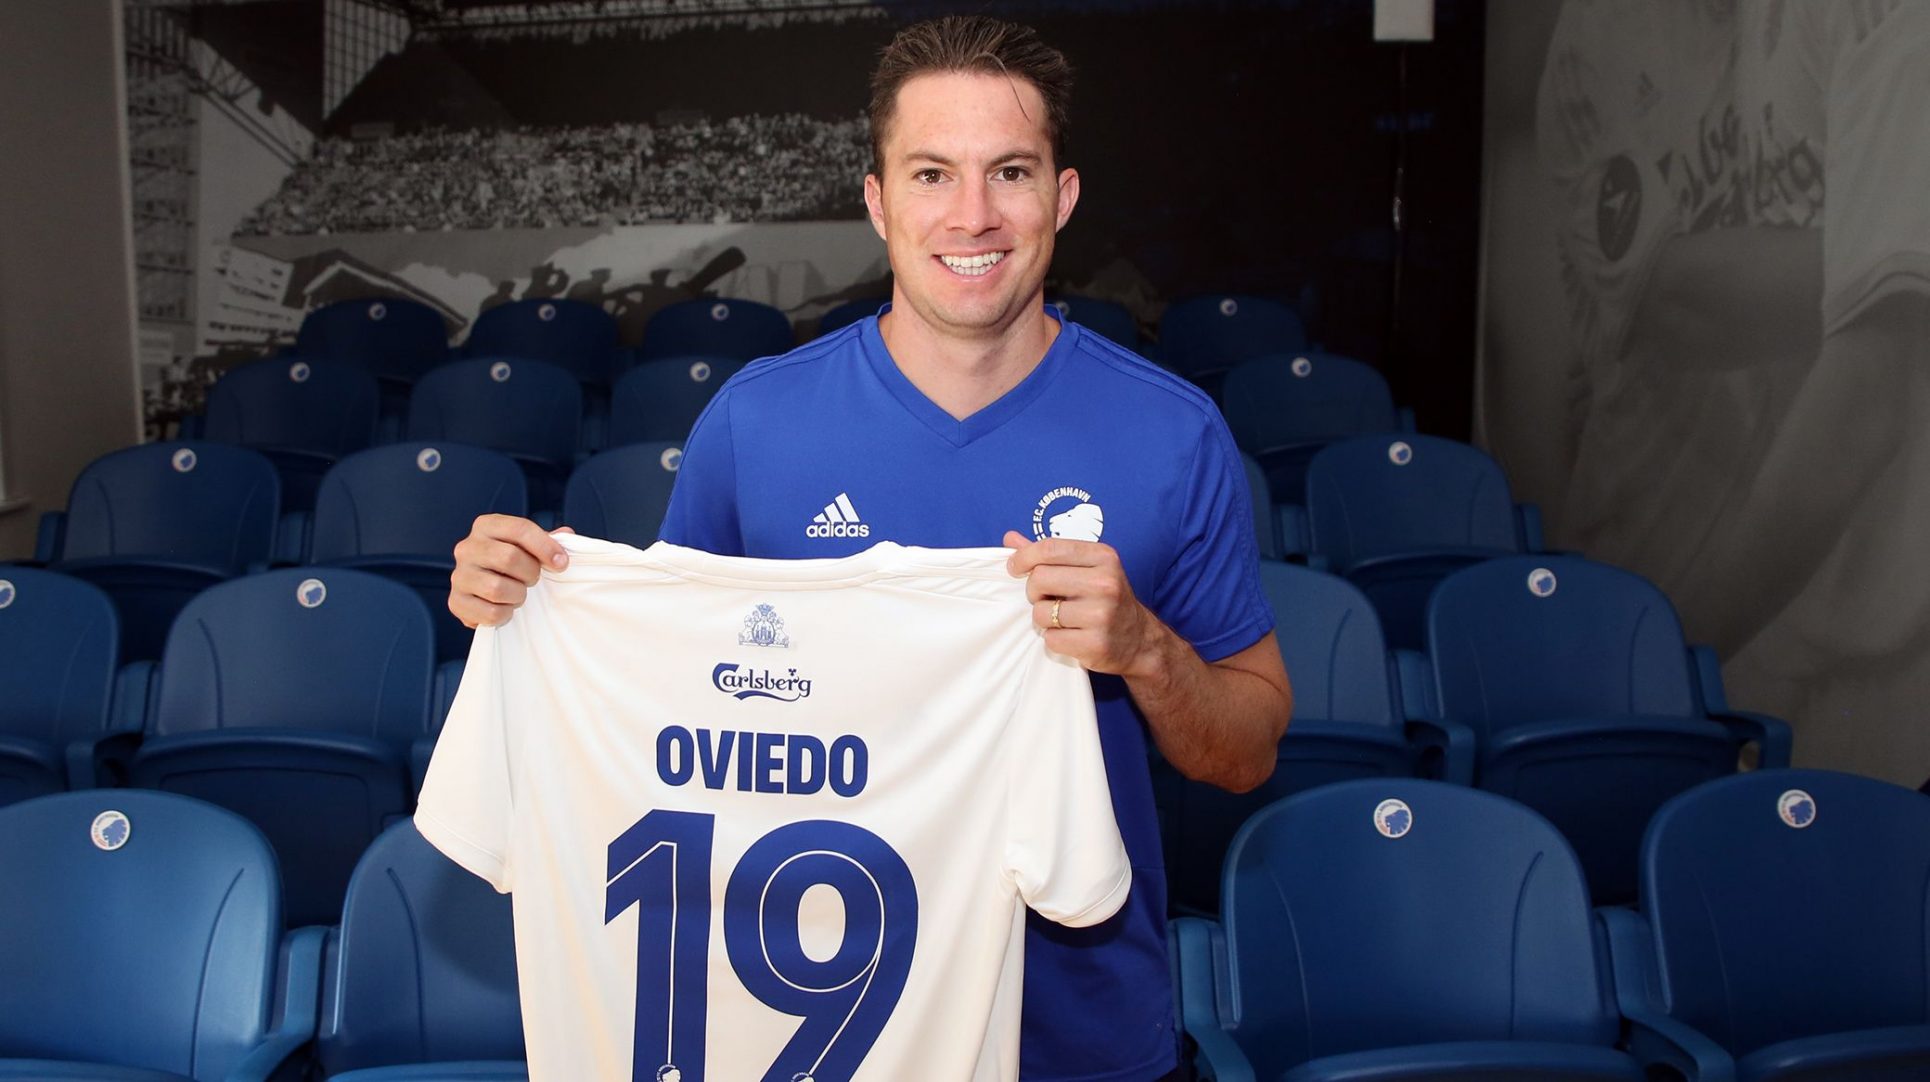 Bryan Oviedo regresa al fútbol de Dinamarca: “quiero ser campeón de nuevo”